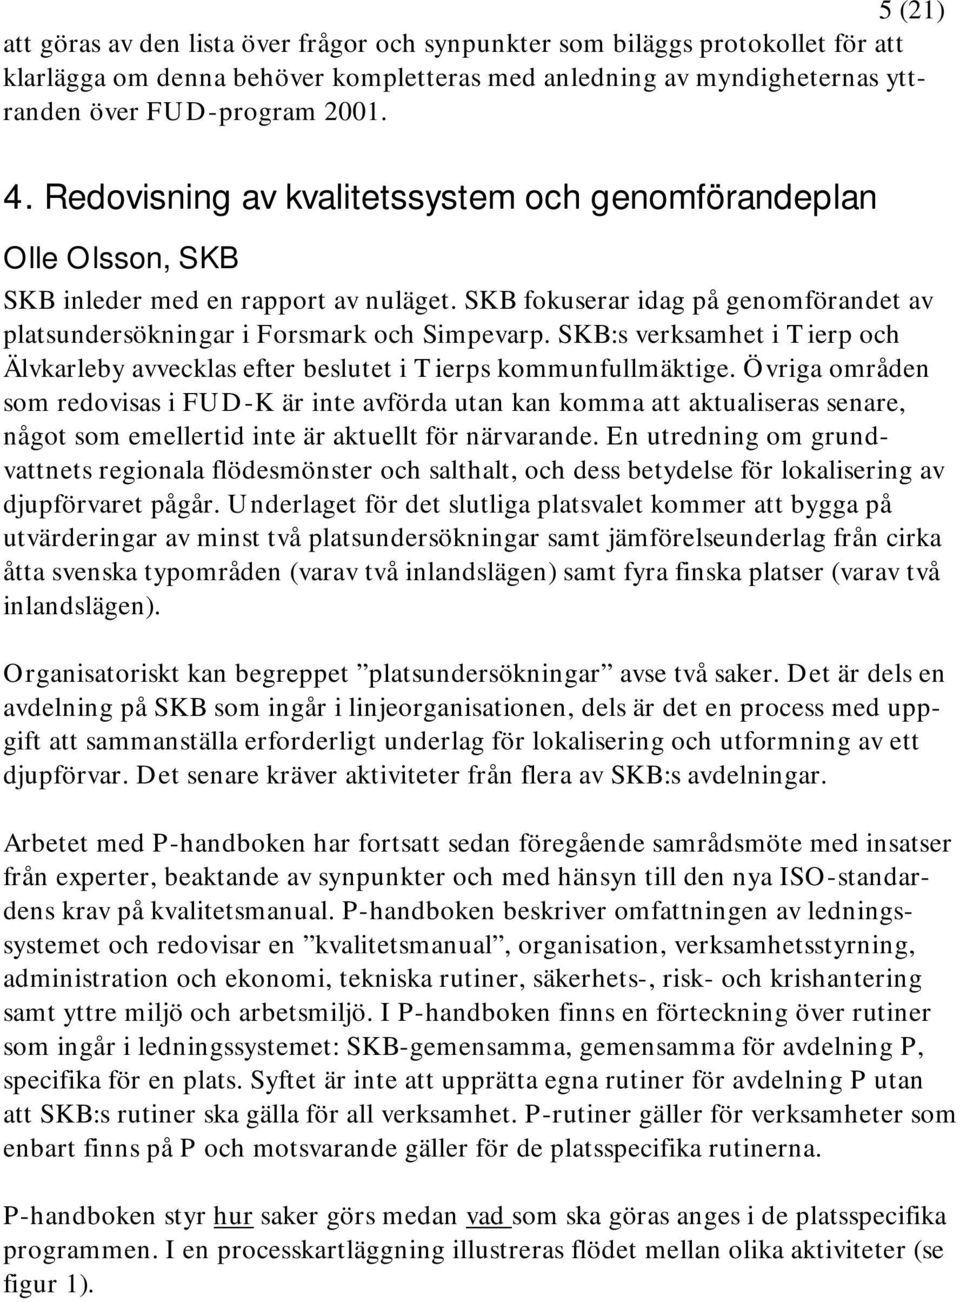 SKB:s verksamhet i Tierp och Älvkarleby avvecklas efter beslutet i Tierps kommunfullmäktige.